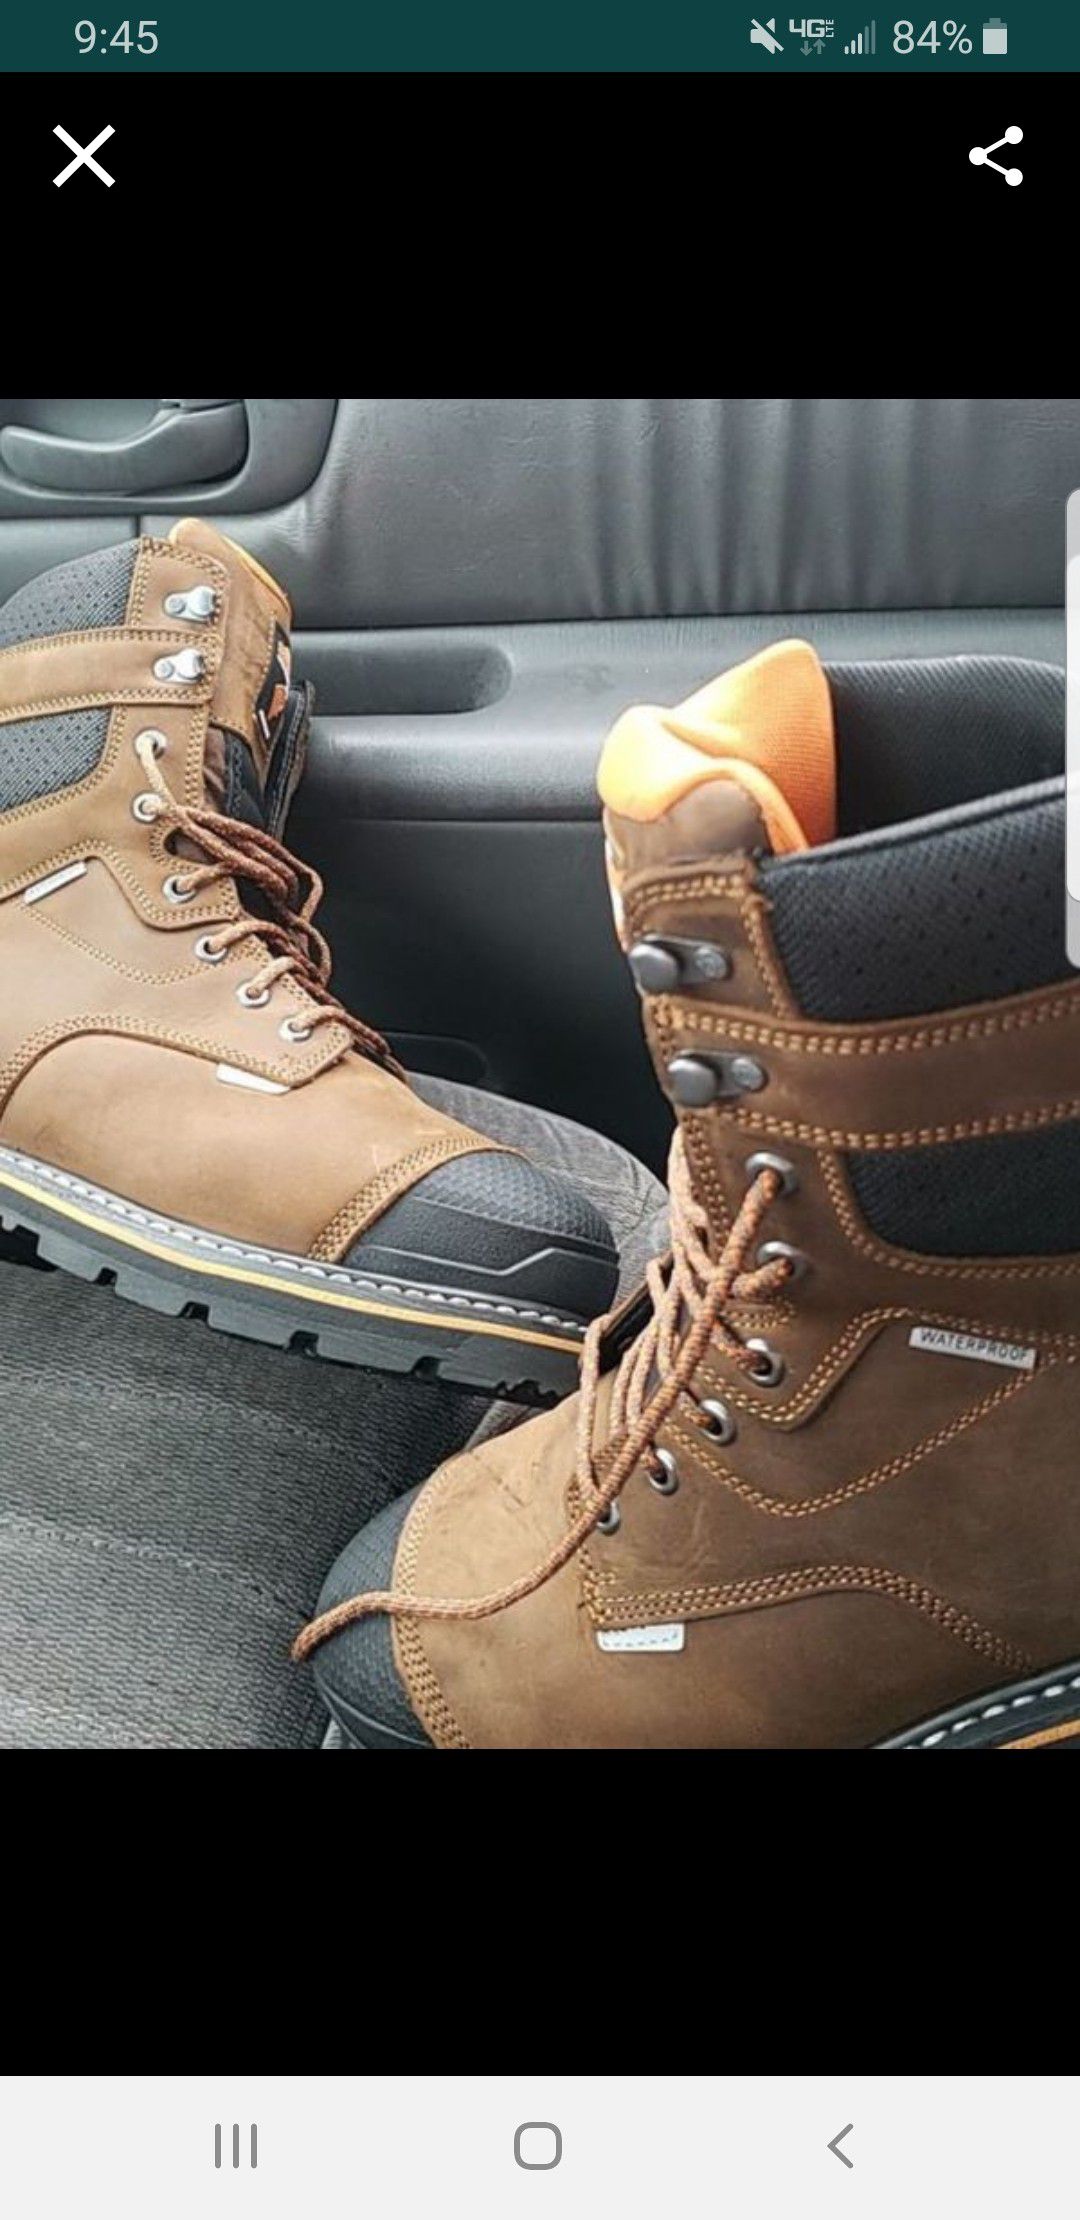 Survivor steel toe and waterproof boots